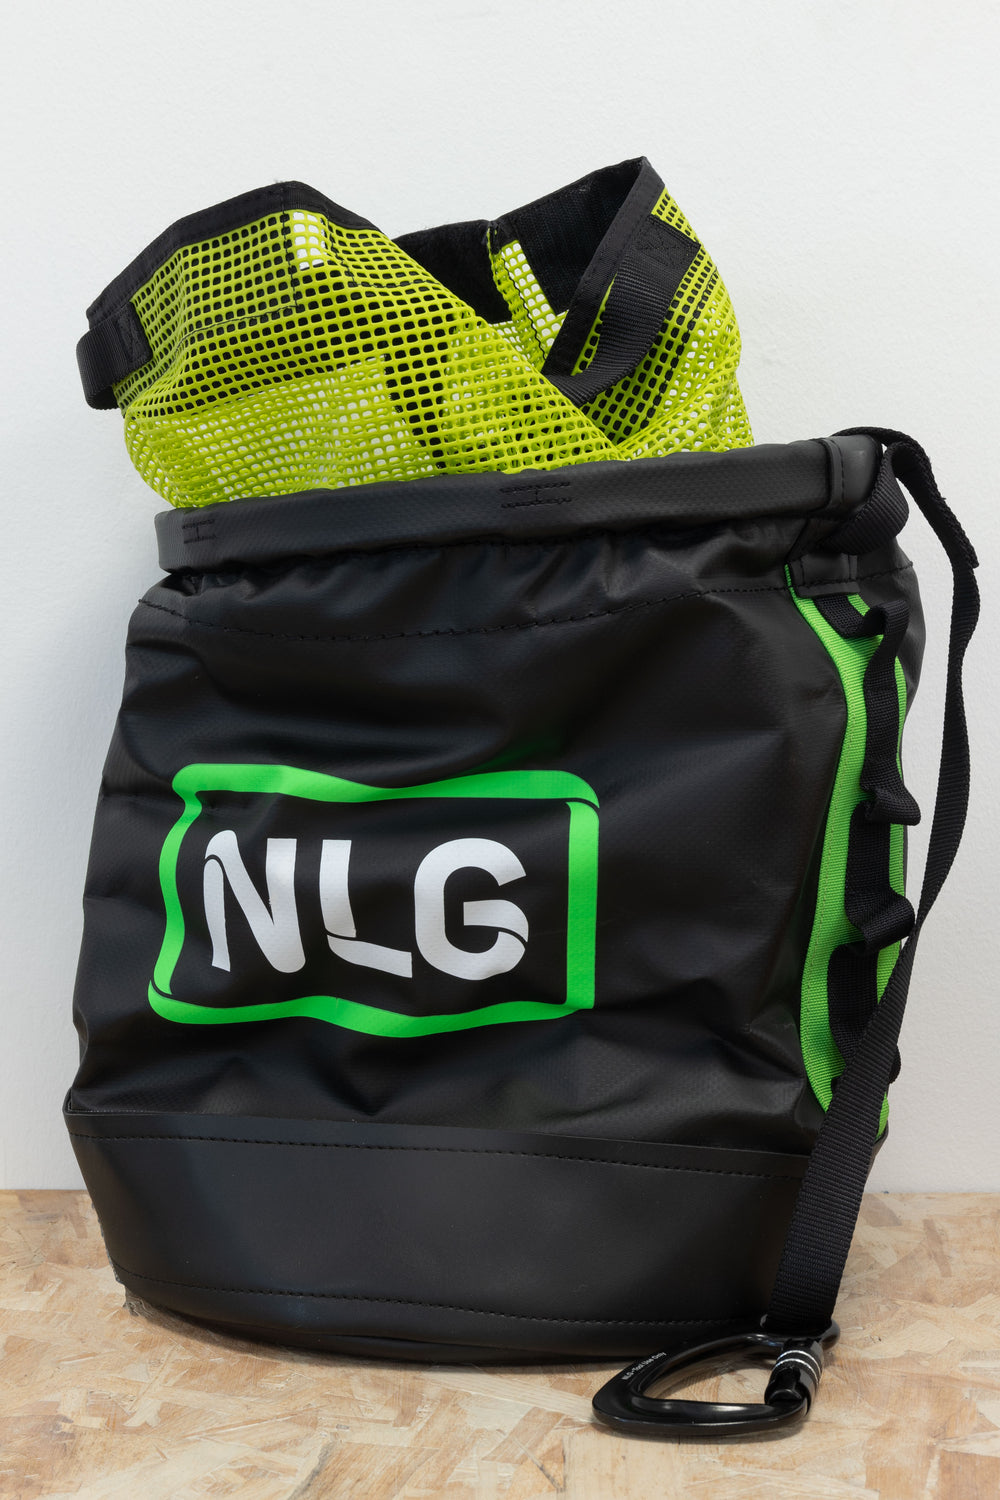 NLG - Ascent Bucket, (Old 125kg)